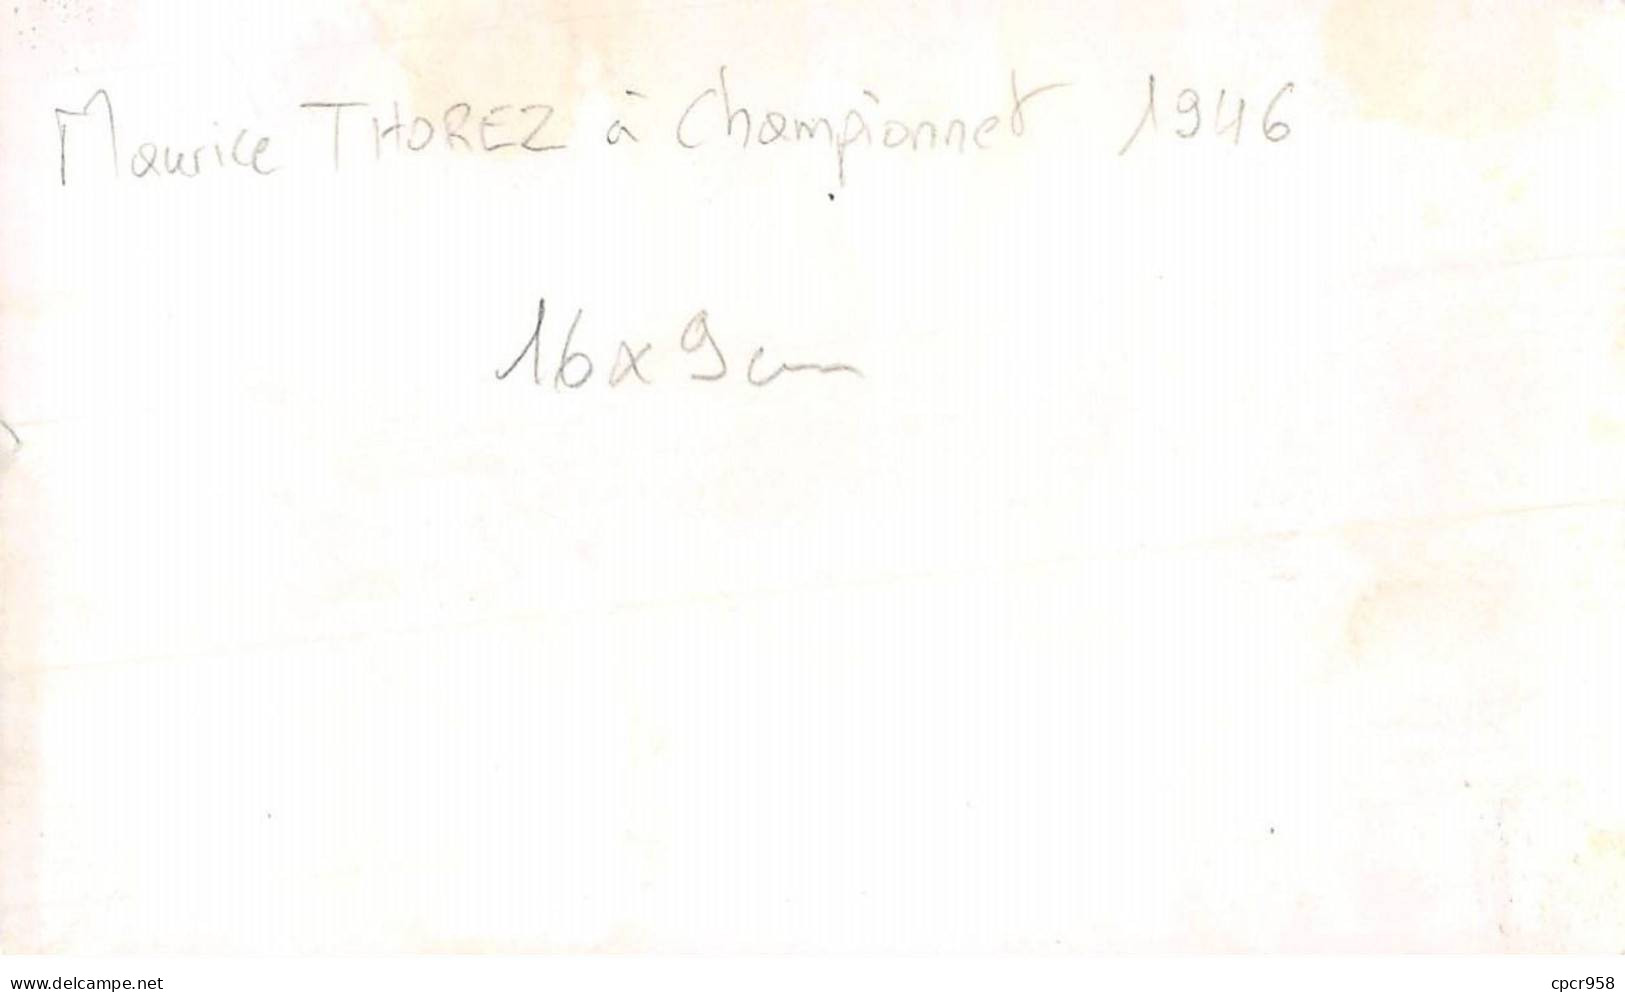 Photographie . Moi10183 . Maurice Thorez A Championnet 1946.16 X 9 Cm. - Berühmtheiten